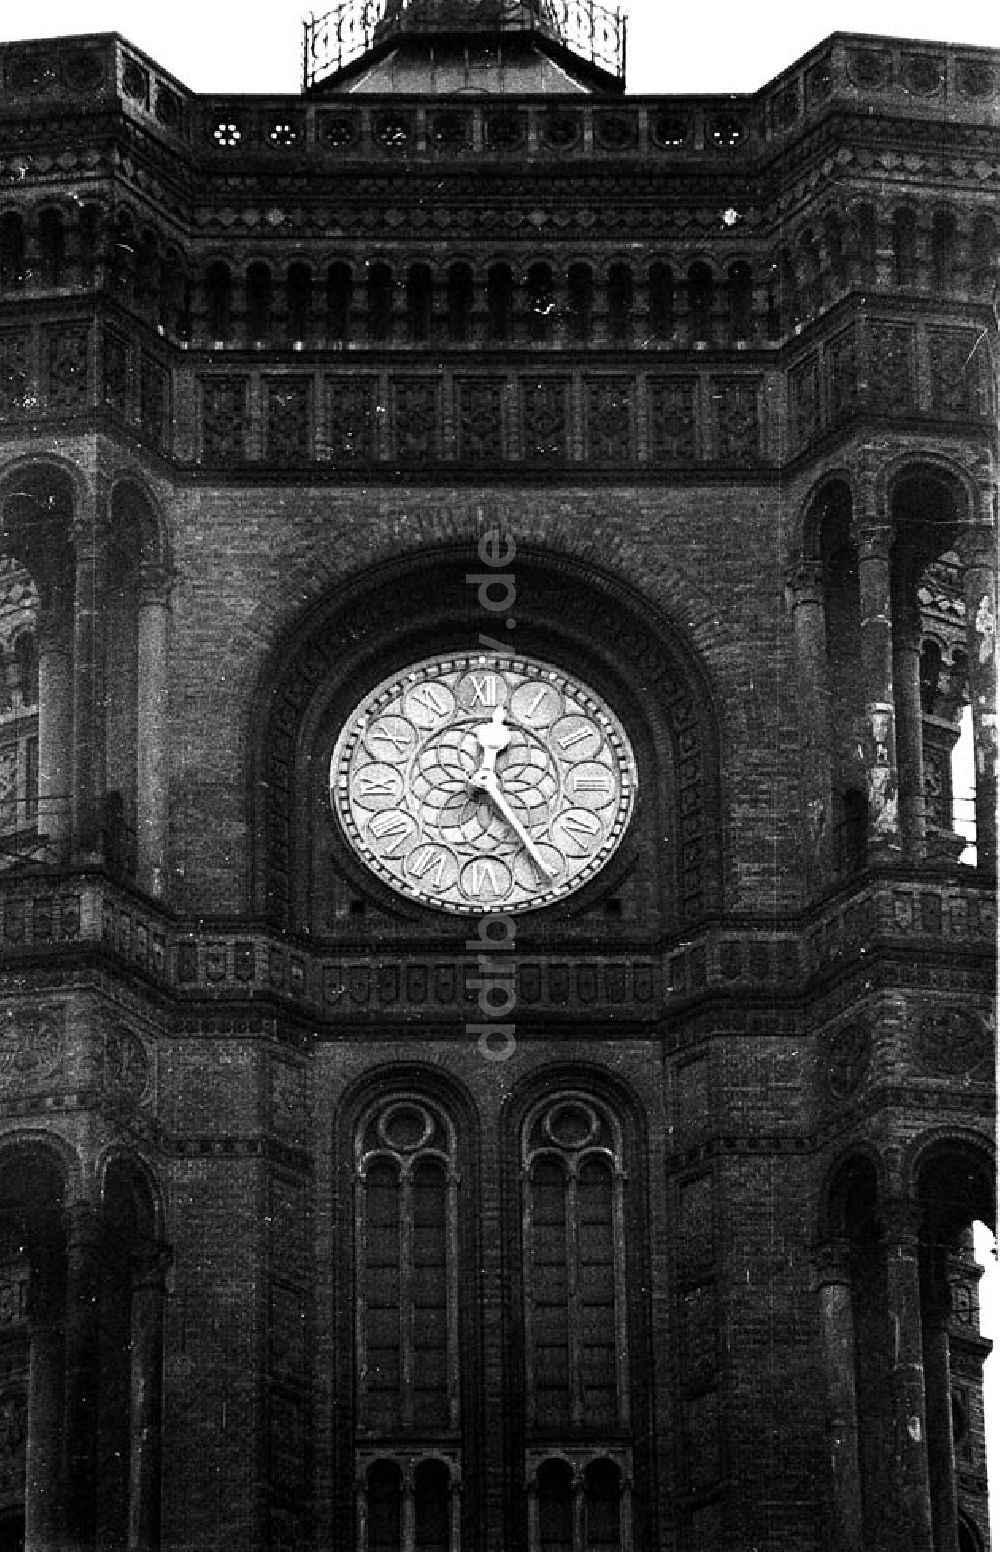 DDR-Bildarchiv: Berlin-Mitte - Uhr des Roten Rathauses in Berlin-Mitte Umschlagnr.: 337 Foto: Winkler